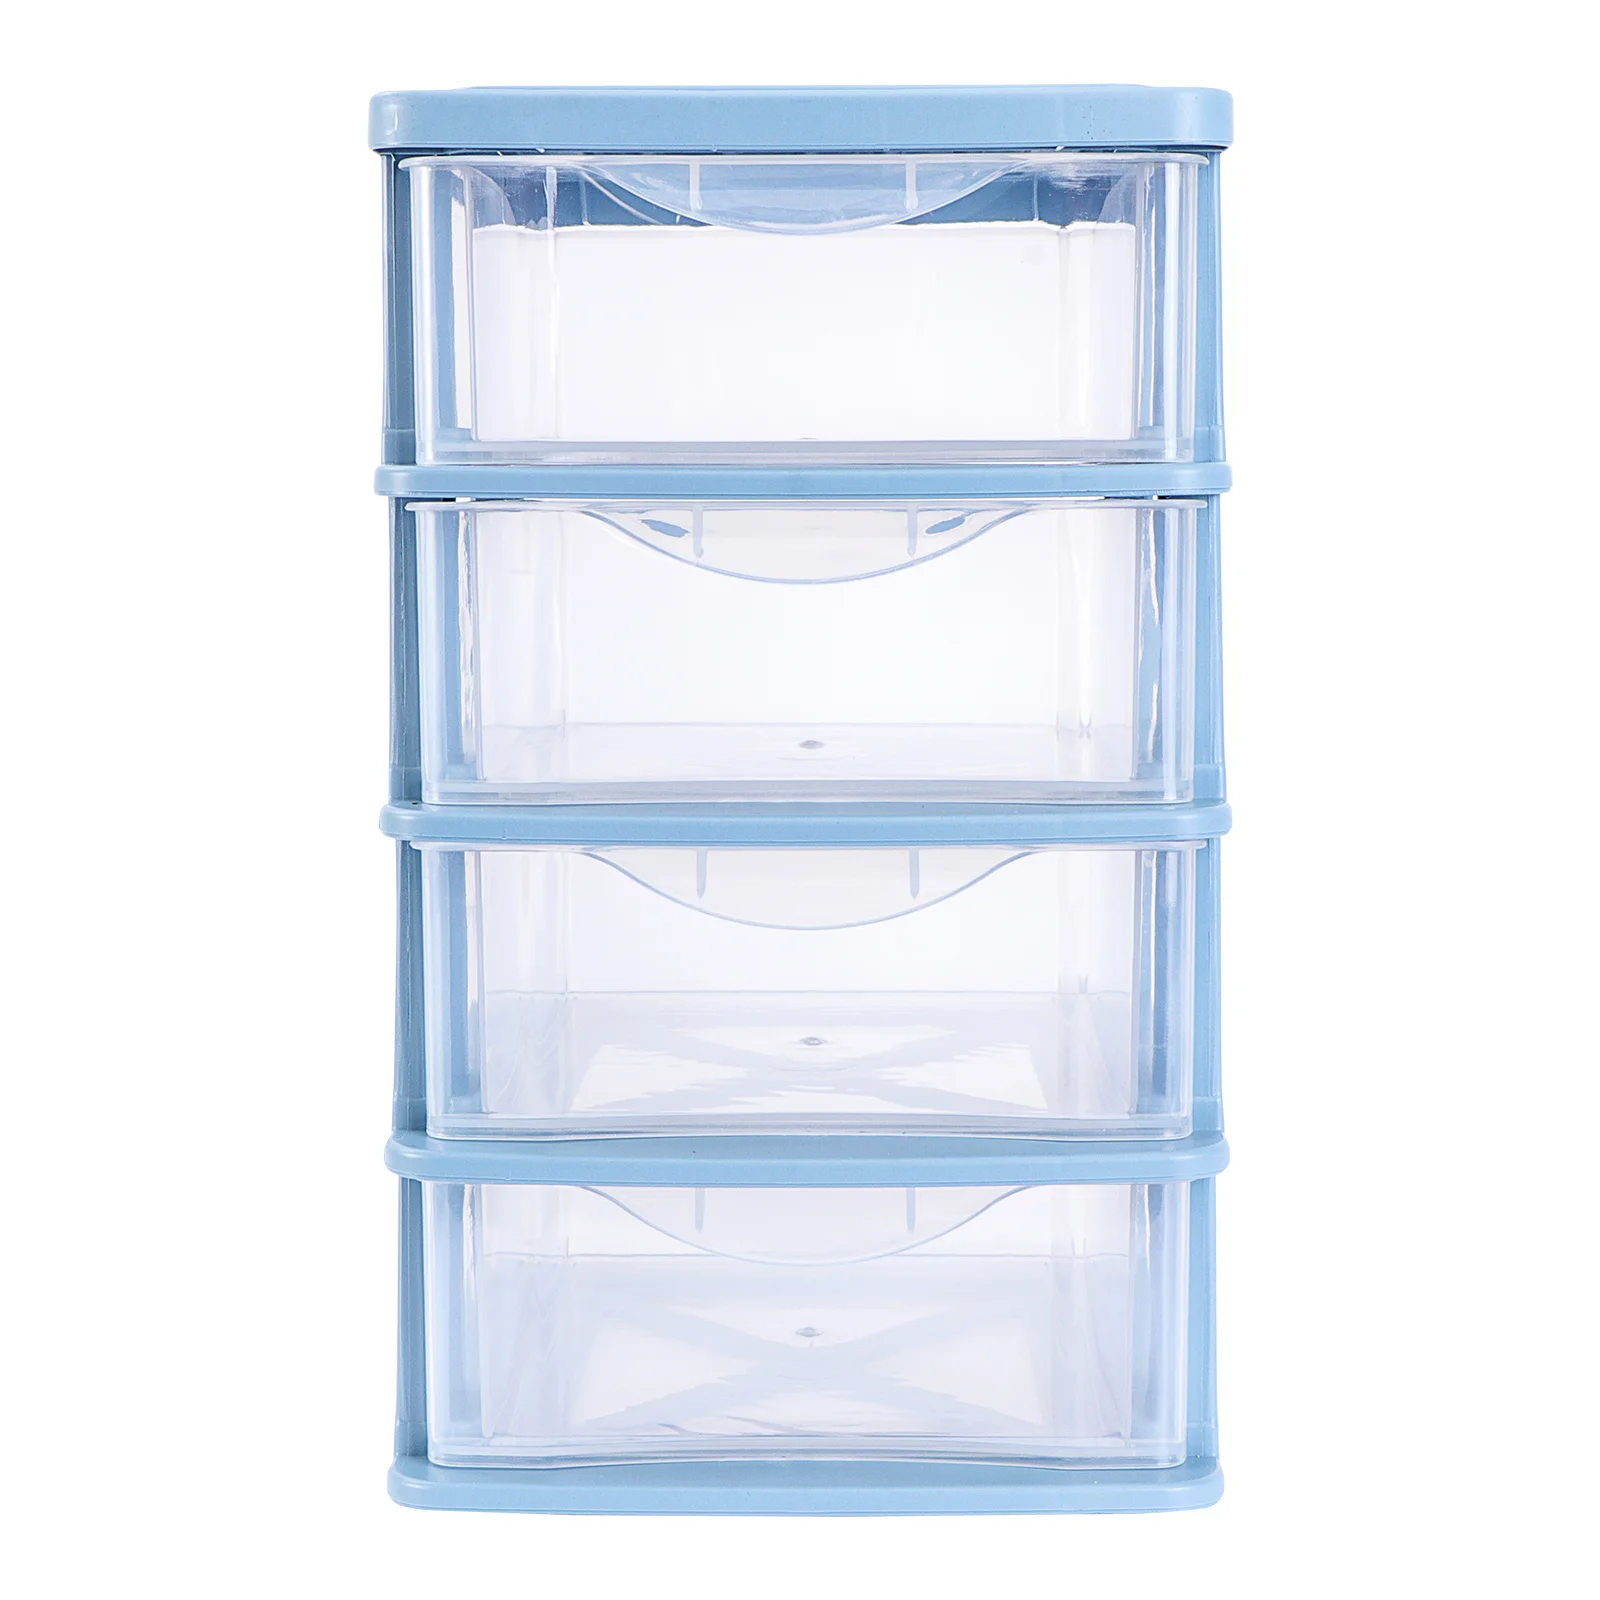 

Plastic Drawers Organizer Freezer Bins Drawer Storage Cabinet Desktop Storage Case Multilayer Storage Locker Box Sink